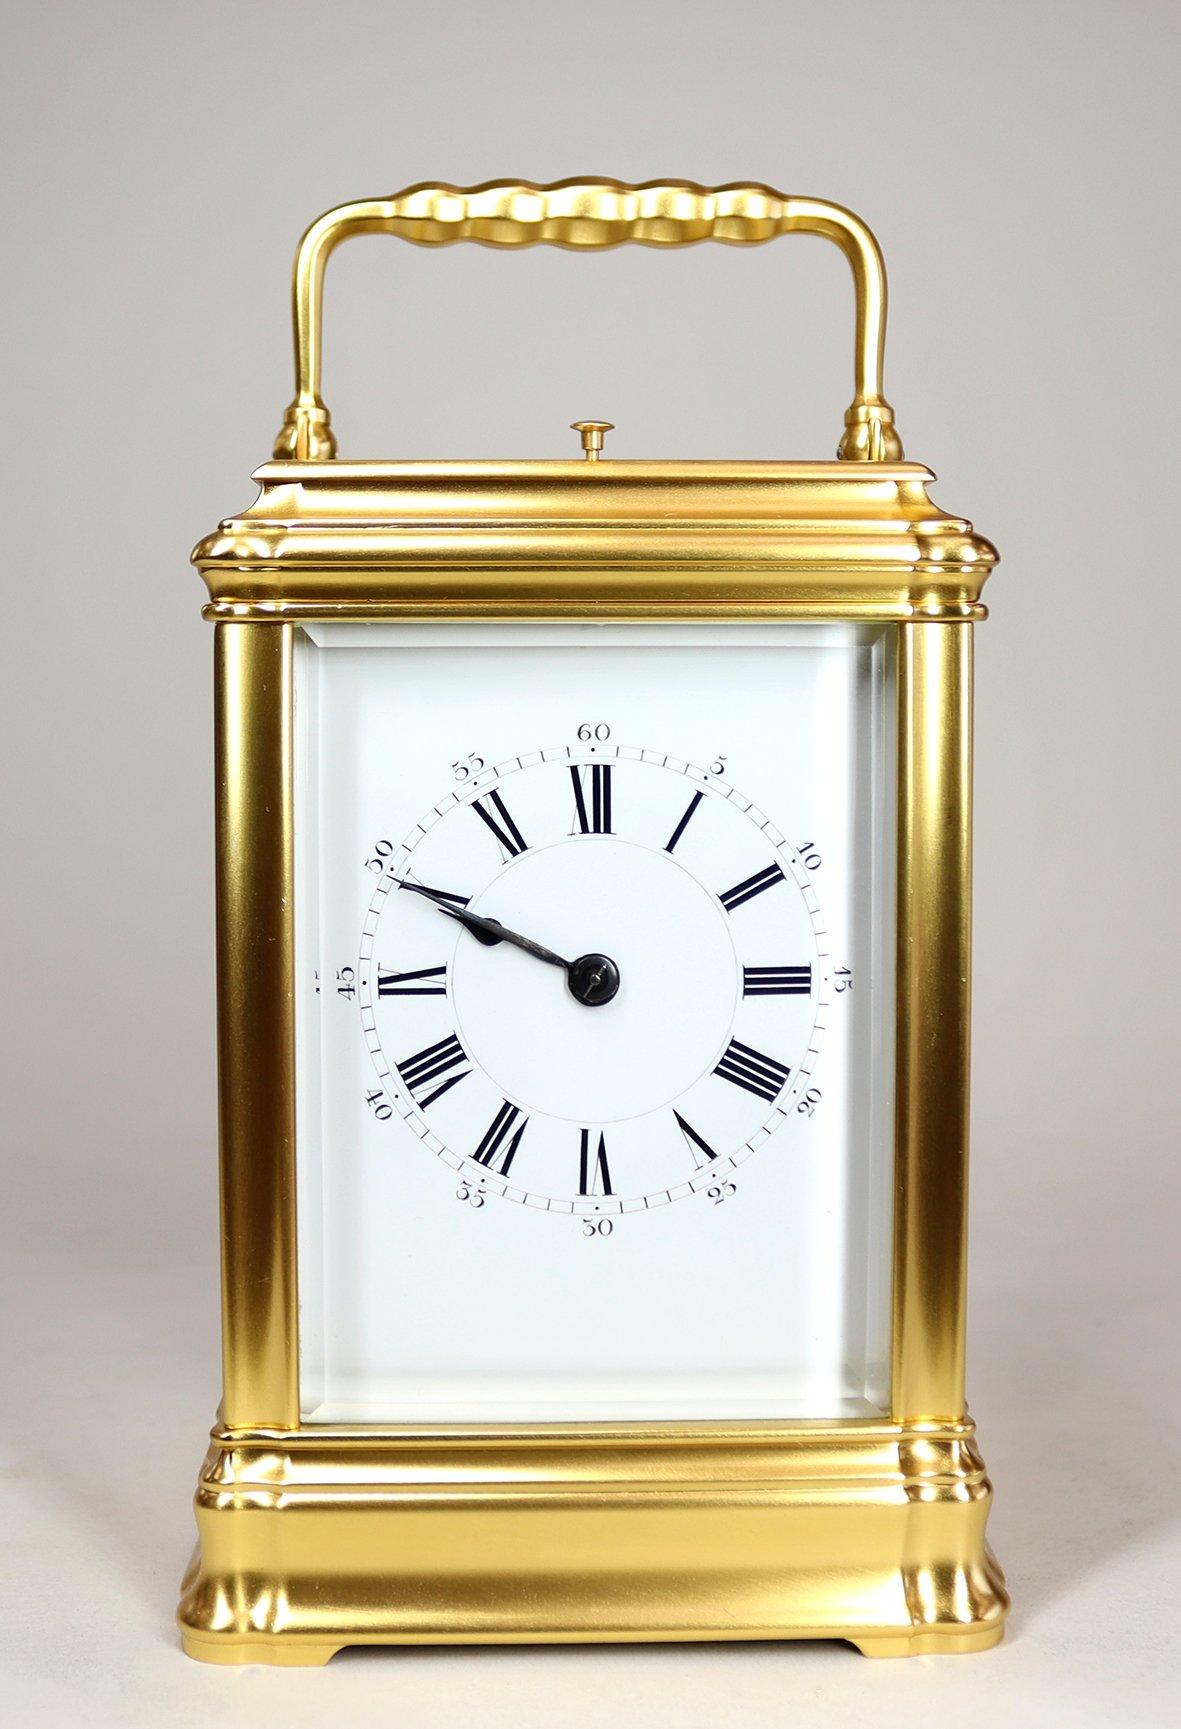 Cette superbe horloge de carrosse est magnifiquement dorée, avec un cadran en émail blanc, un anneau de chapitre romain et des minutes arabes extérieures. Le mouvement à deux trains de huit jours est régulé par un échappement à levier anglais à